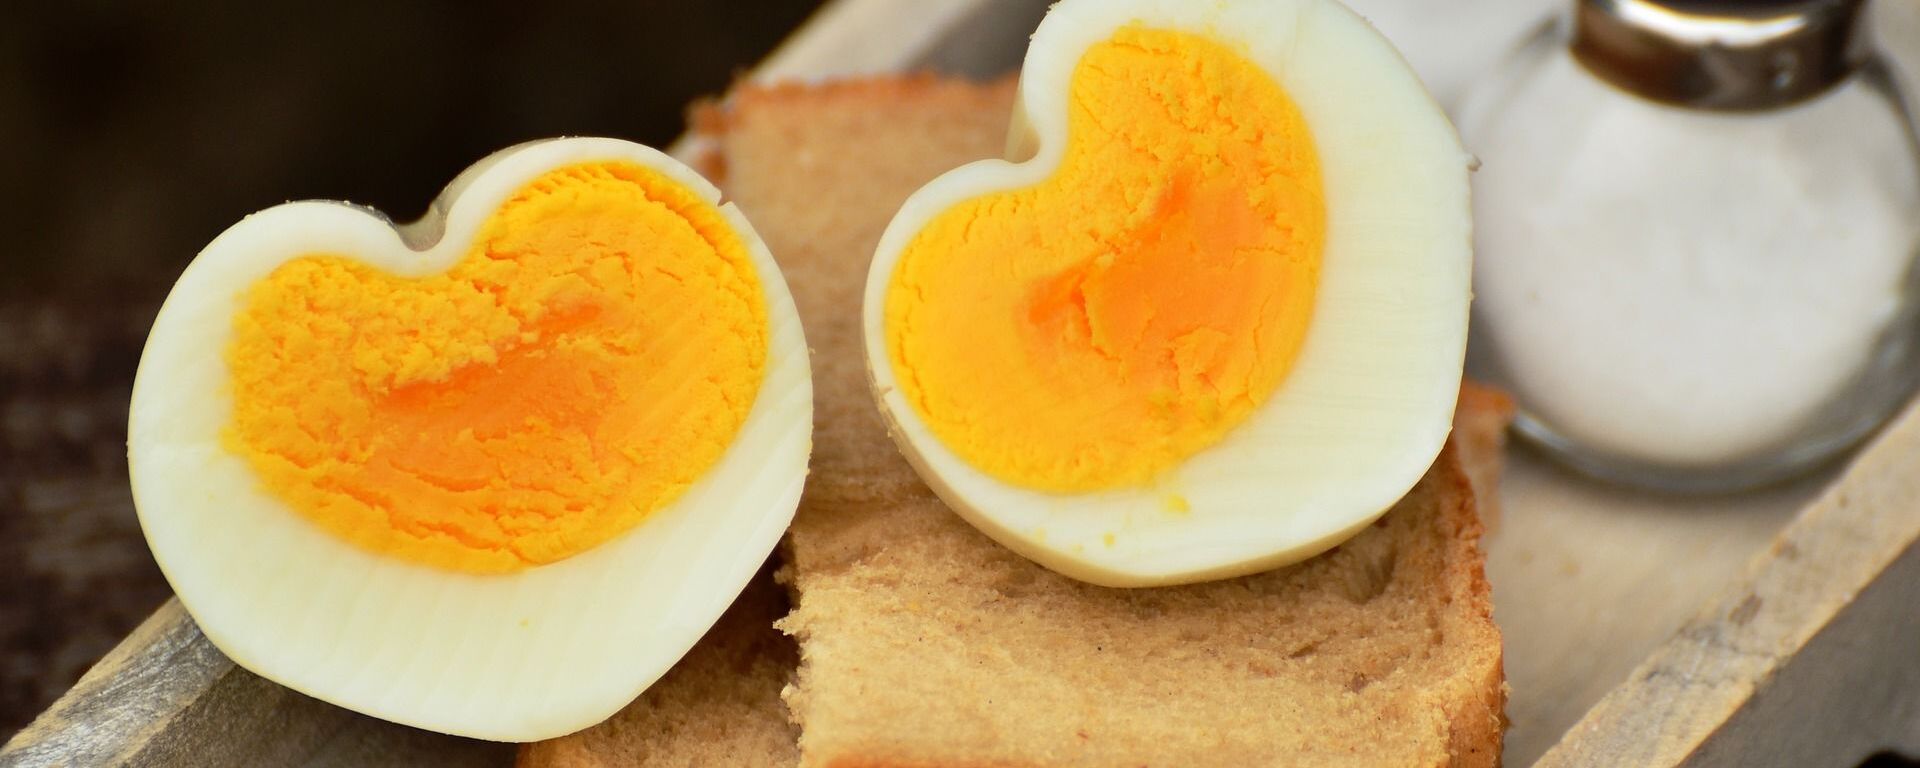 شما در هفته چند عدد تخم مرغ می توانید بخورید؟  - اسپوتنیک ایران  , 1920, 27.03.2022